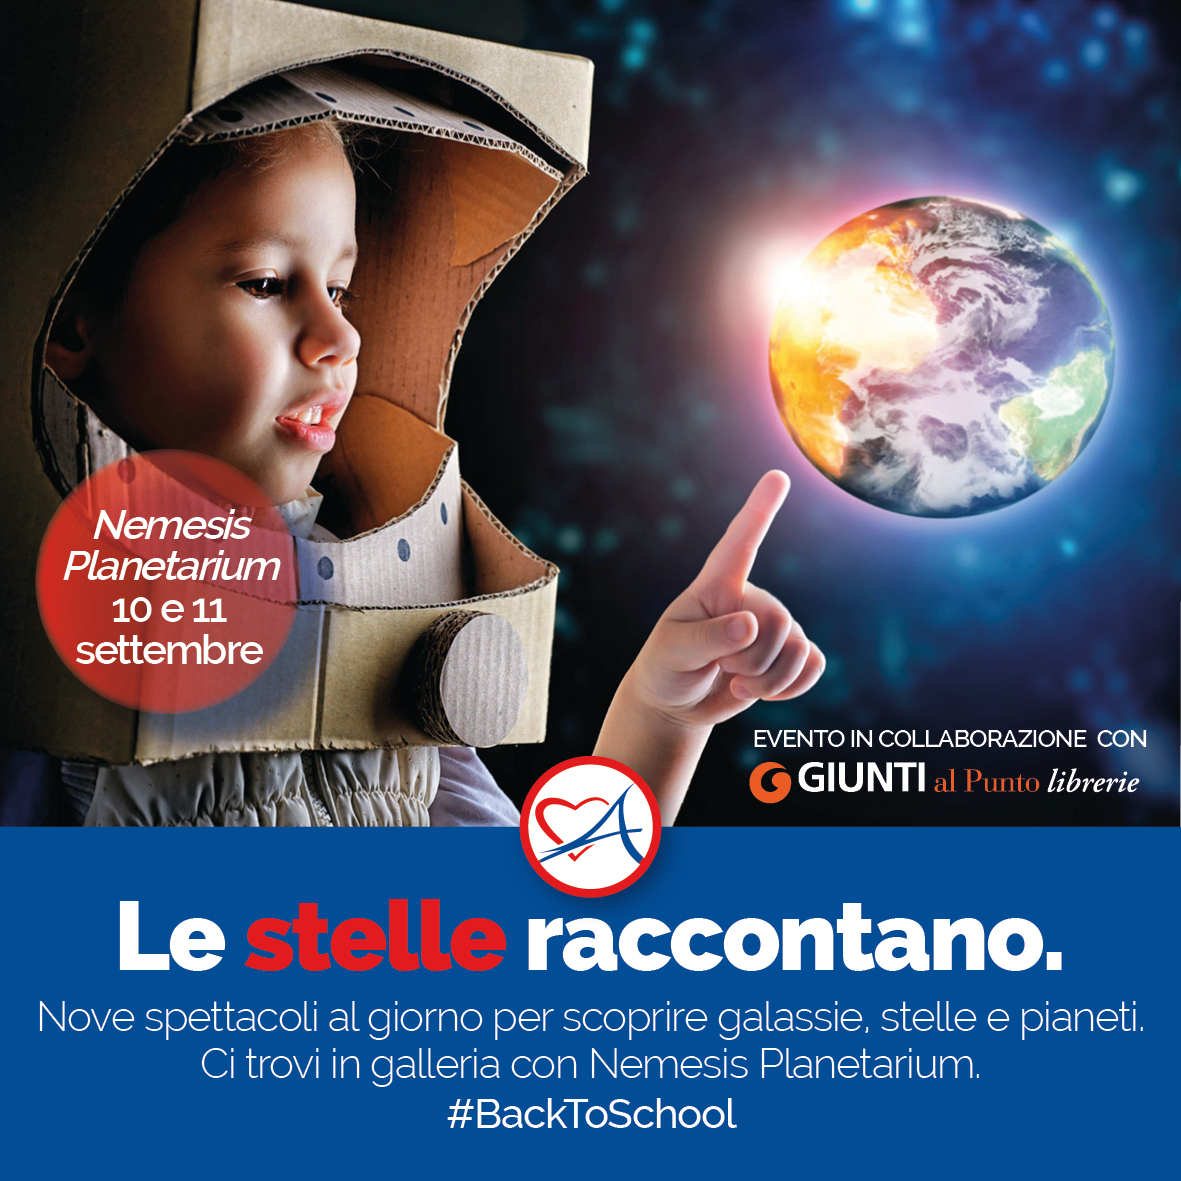 Centro commerciale Cuore Adriatico - Nemesis Planetarium contest